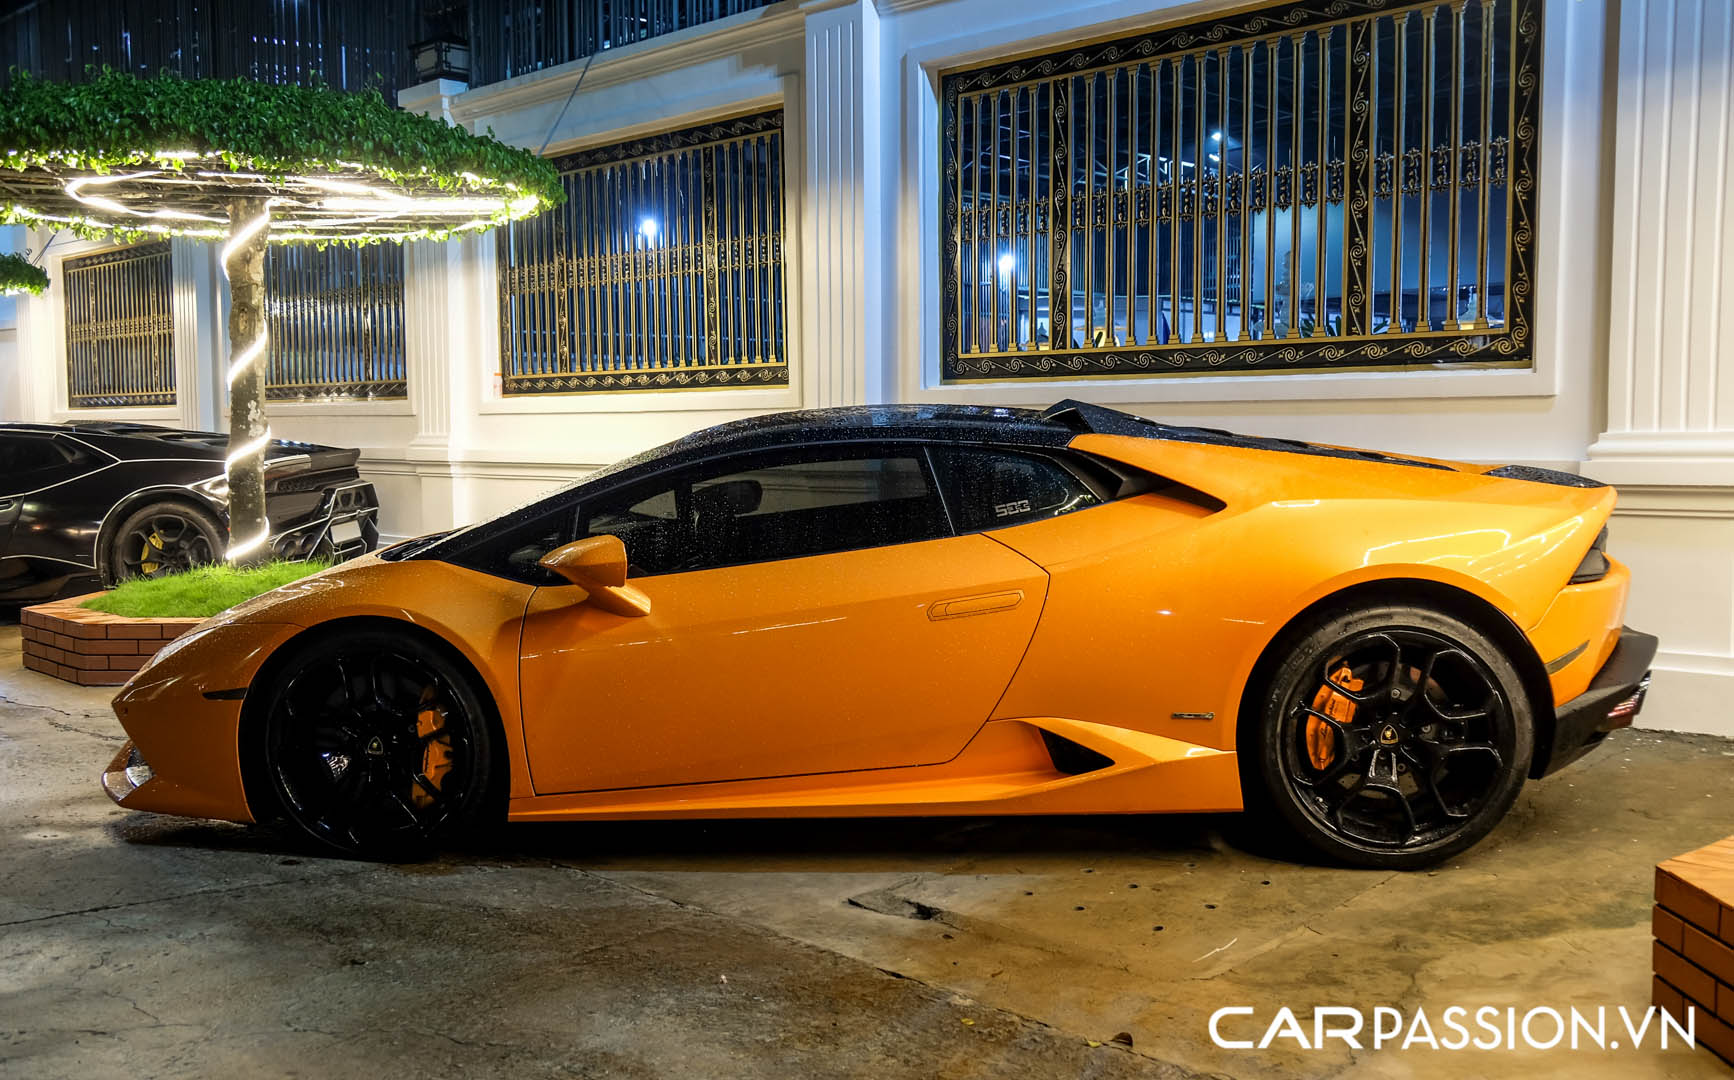 CP-Bộ đôi Lamborghini Huracan độ độc đáo40.jpg